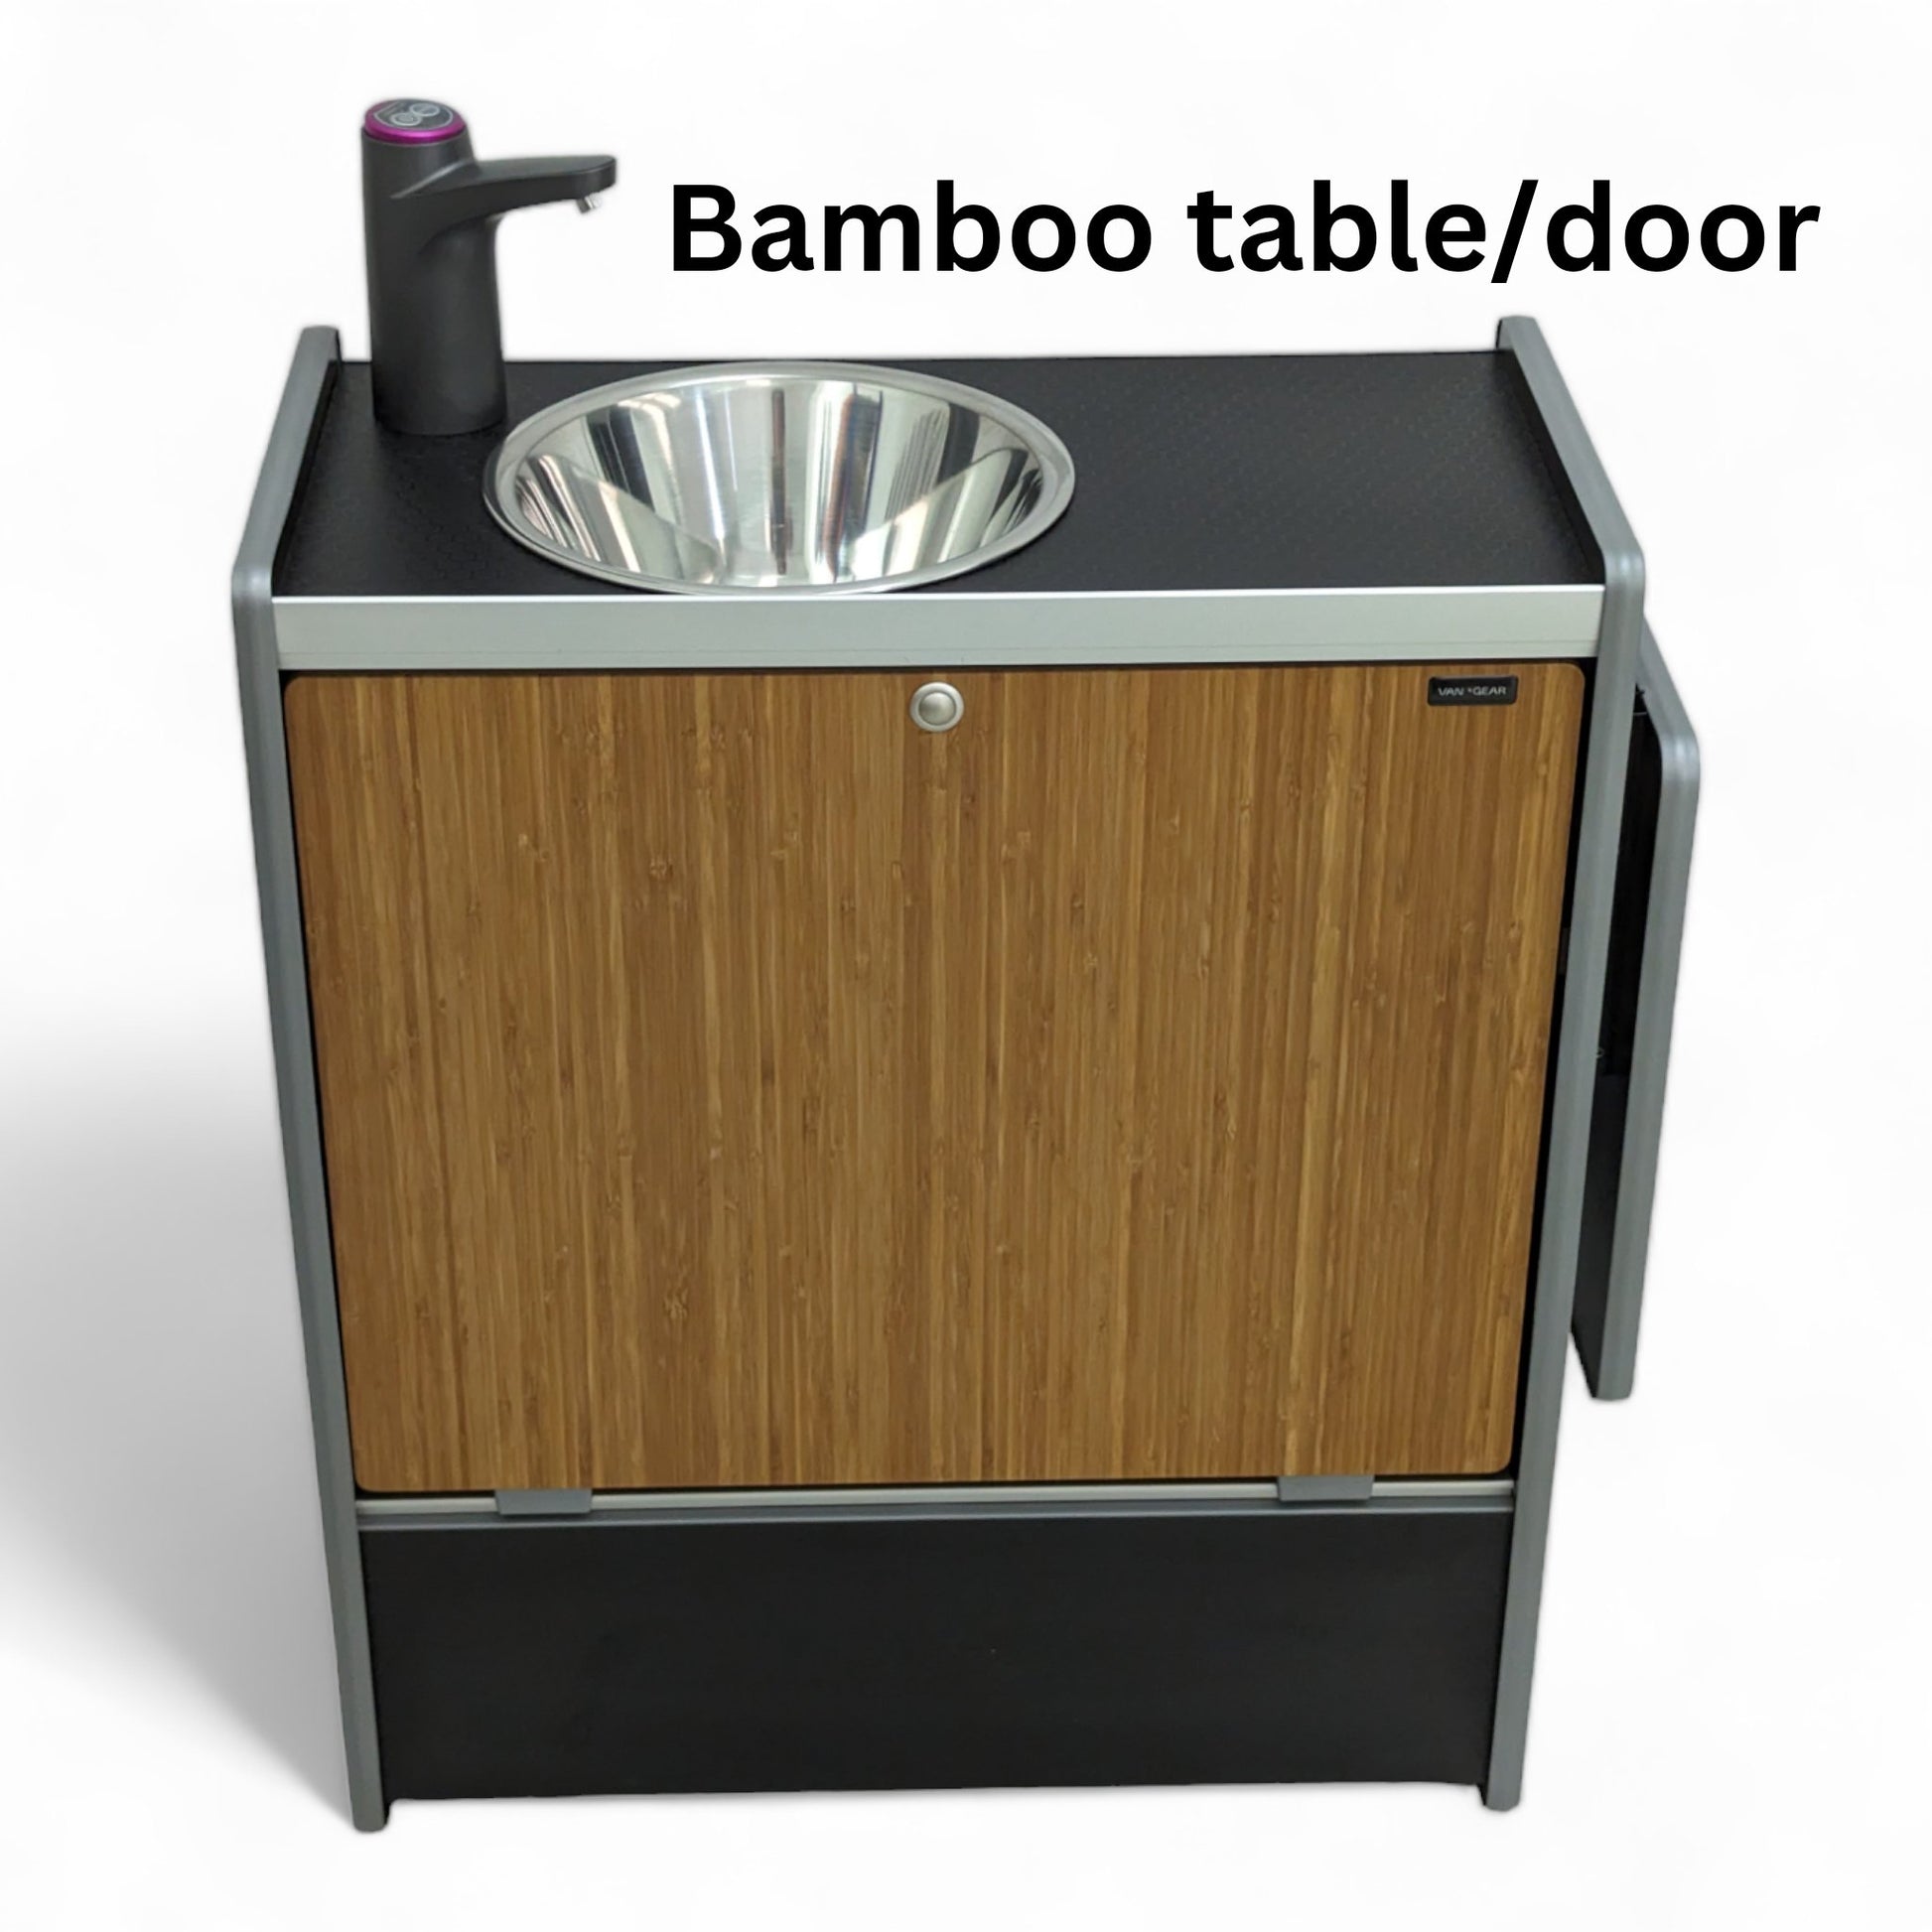 Vangear Nano-Pod 2.1 campervan kitchen-Black with Bamboo door - Vangear-EU